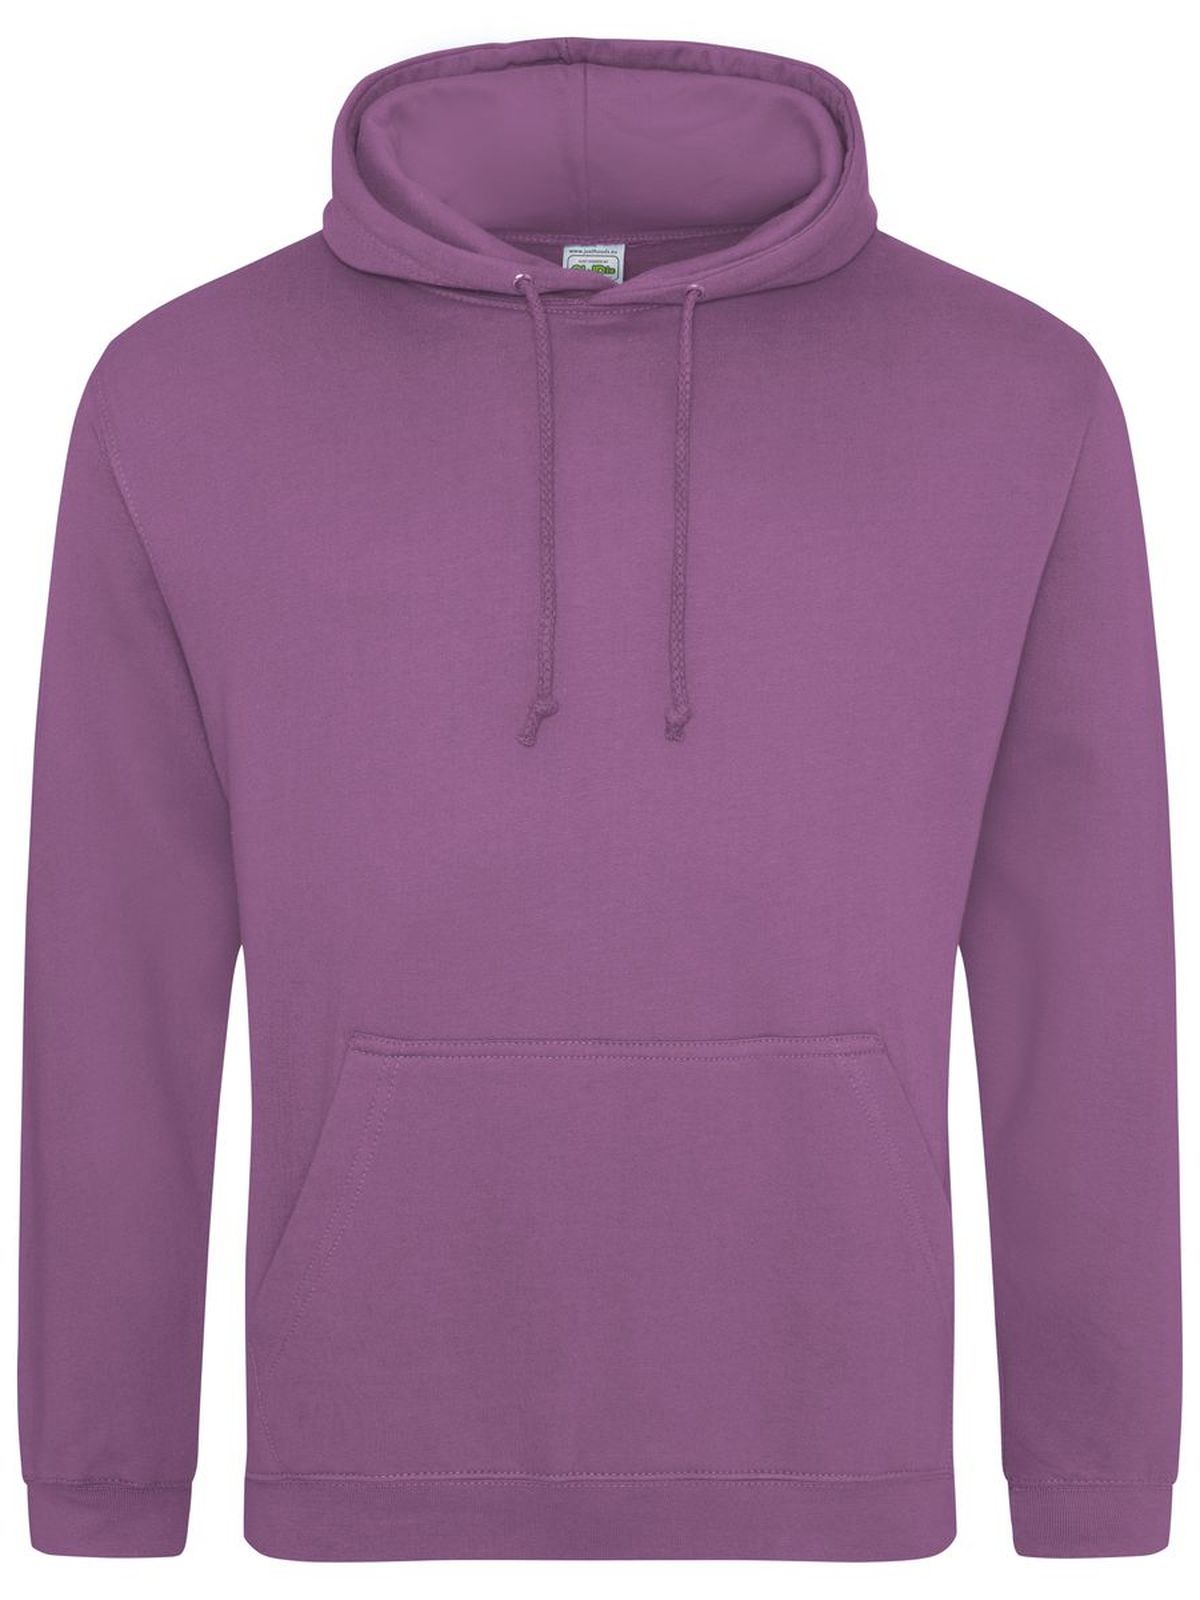 college-hoodie-pink-purple.webp